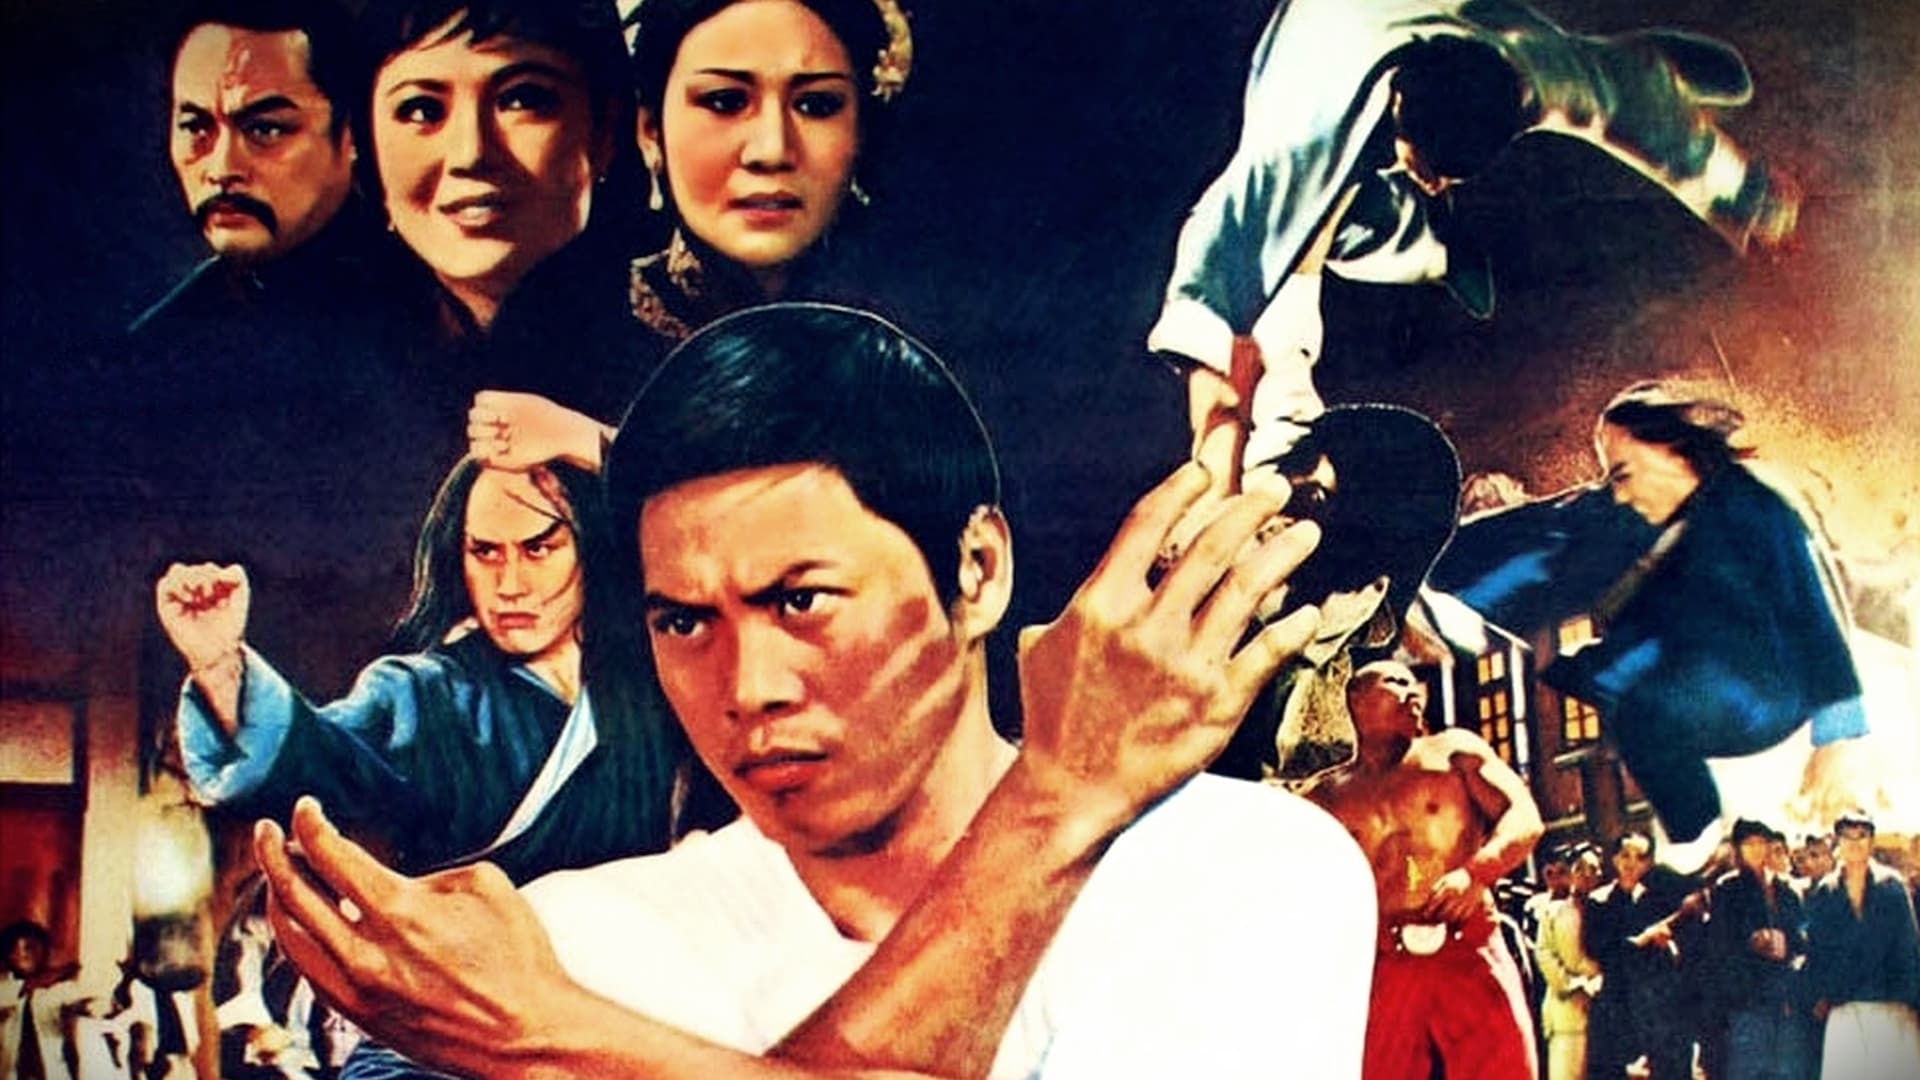 Cinque dita di violenza (1972)